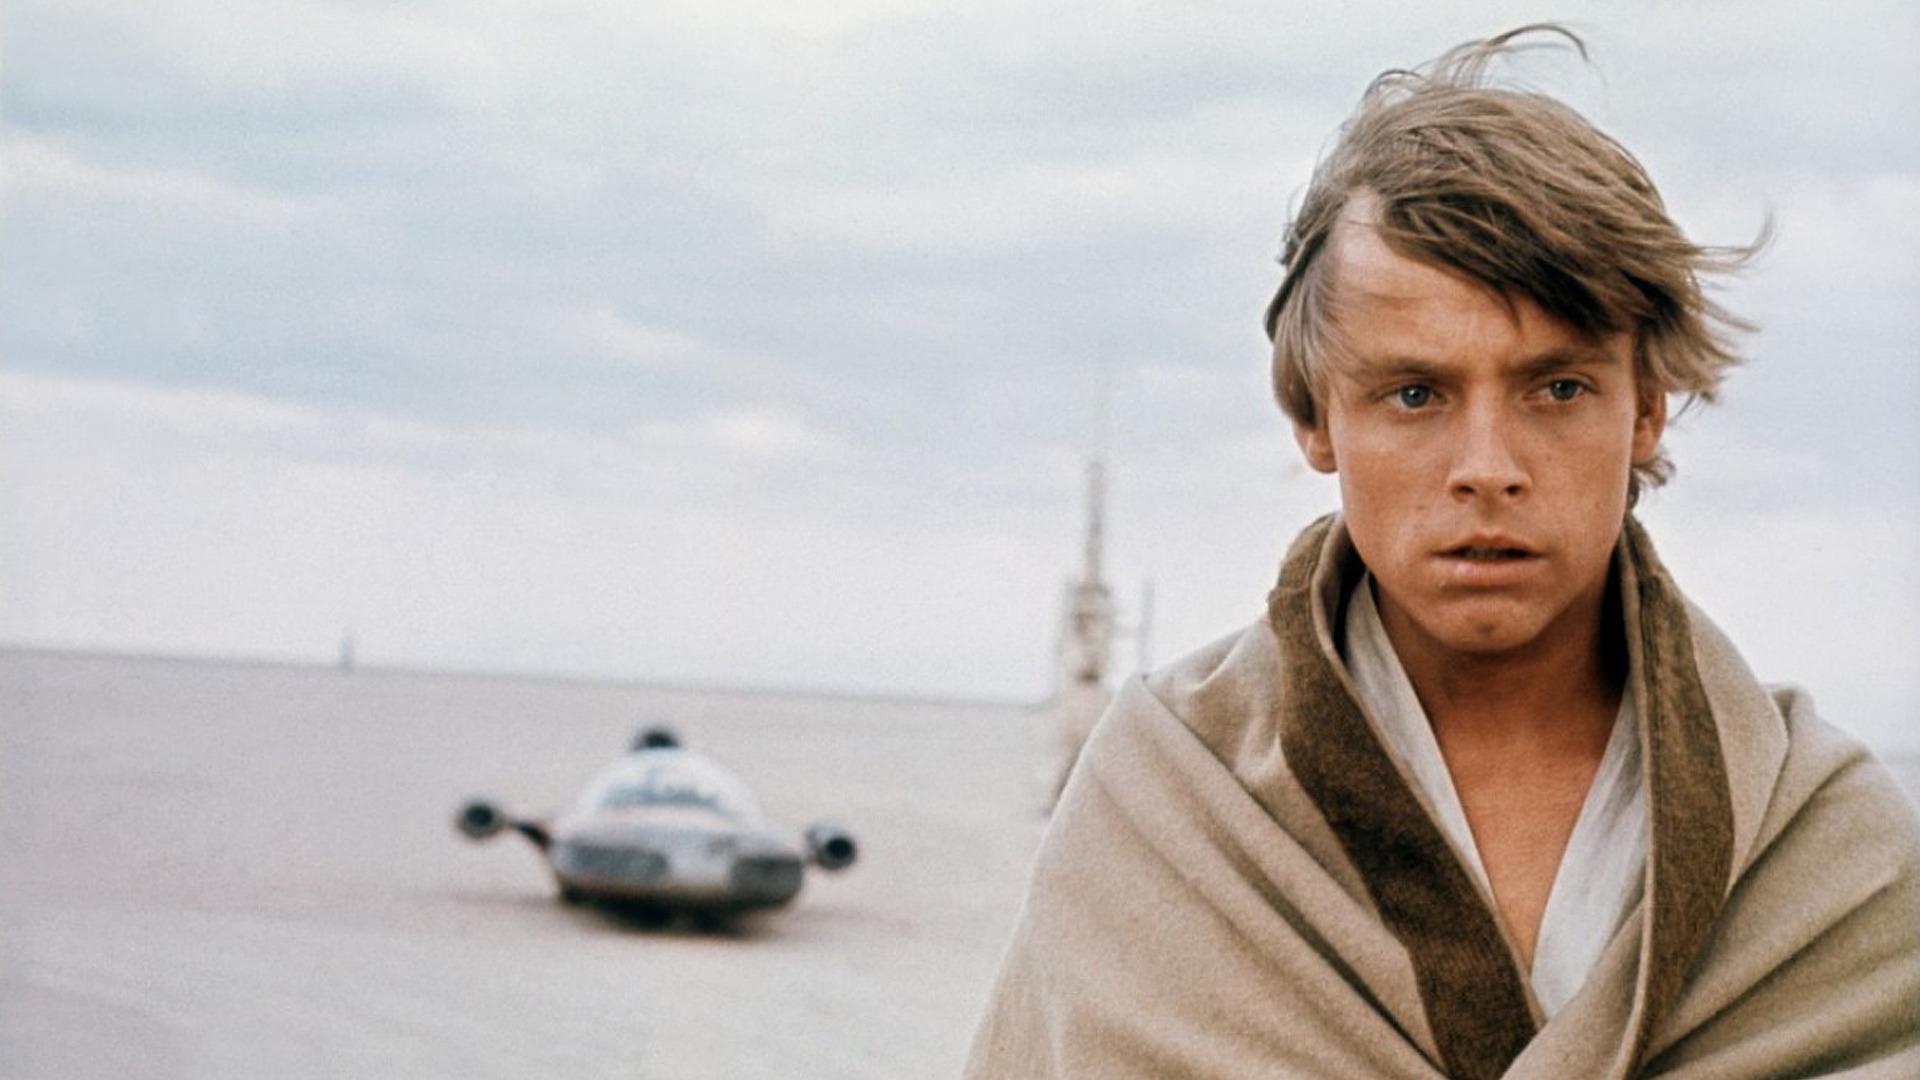 Here's What Luke Skywalker Looks Like In Star Wars: Episode VIII